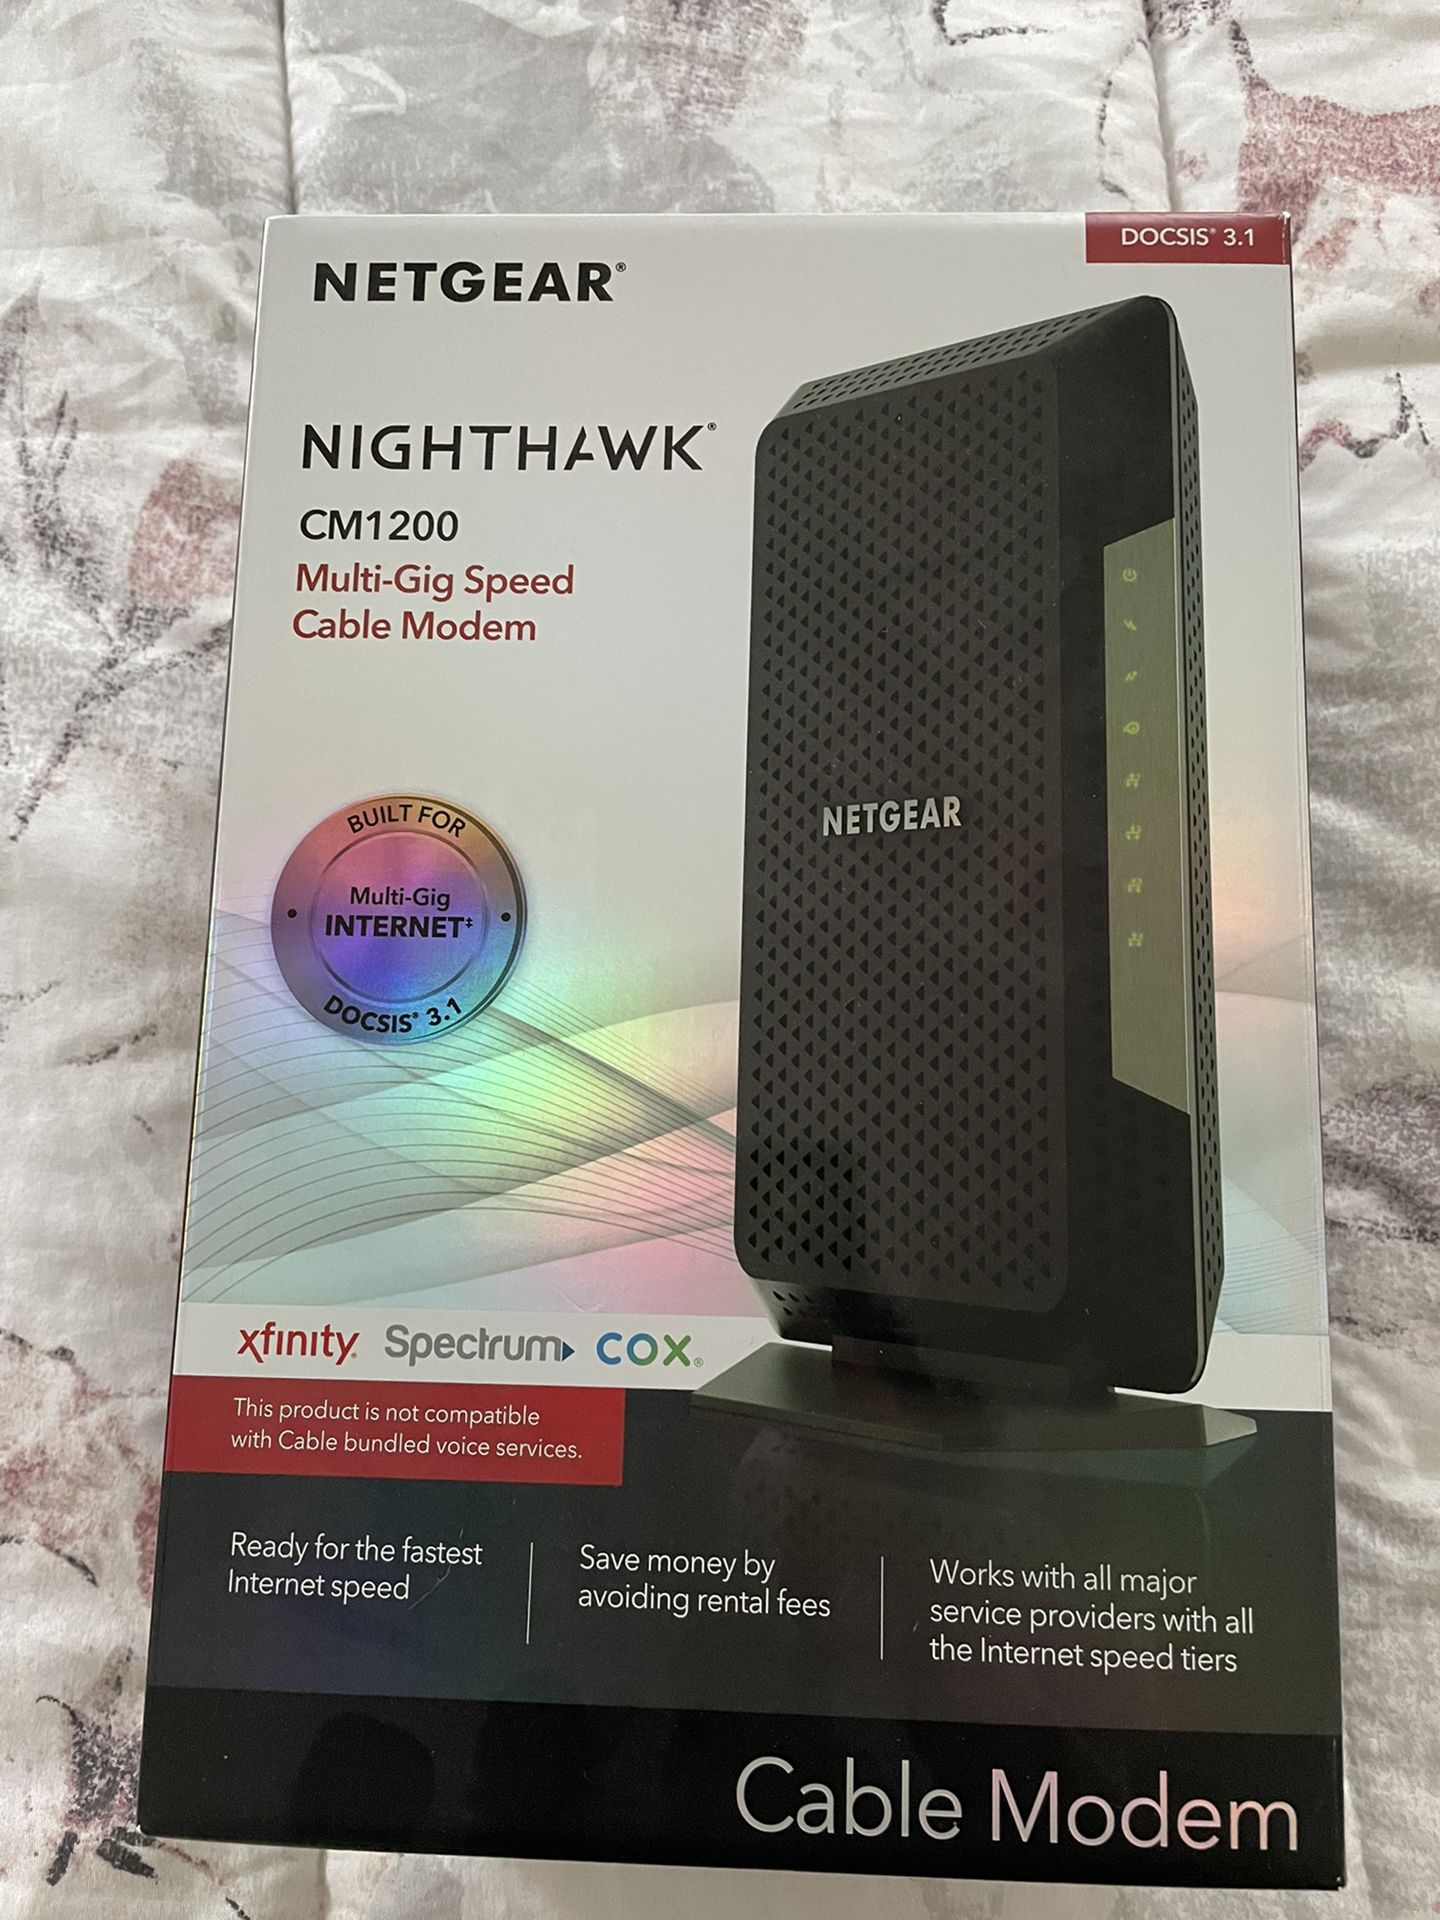 NWT Netgear Nighthawk CM 1200 Multi-Gig Speed Cable Modem